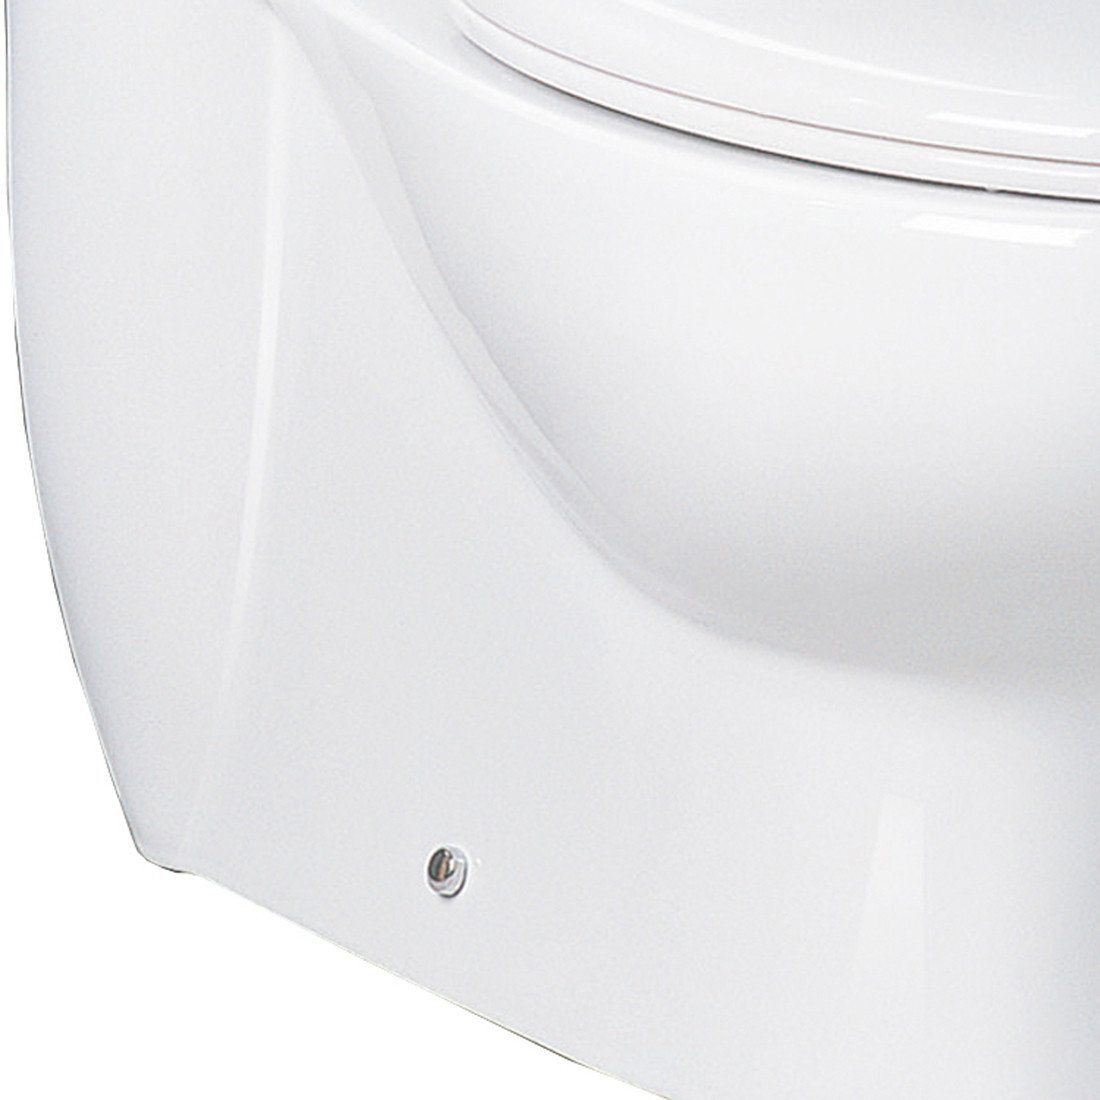 ARIEL Platinum TB309-1M 'The Hermes' Toilet with Dual Flush Toilets ARIEL 